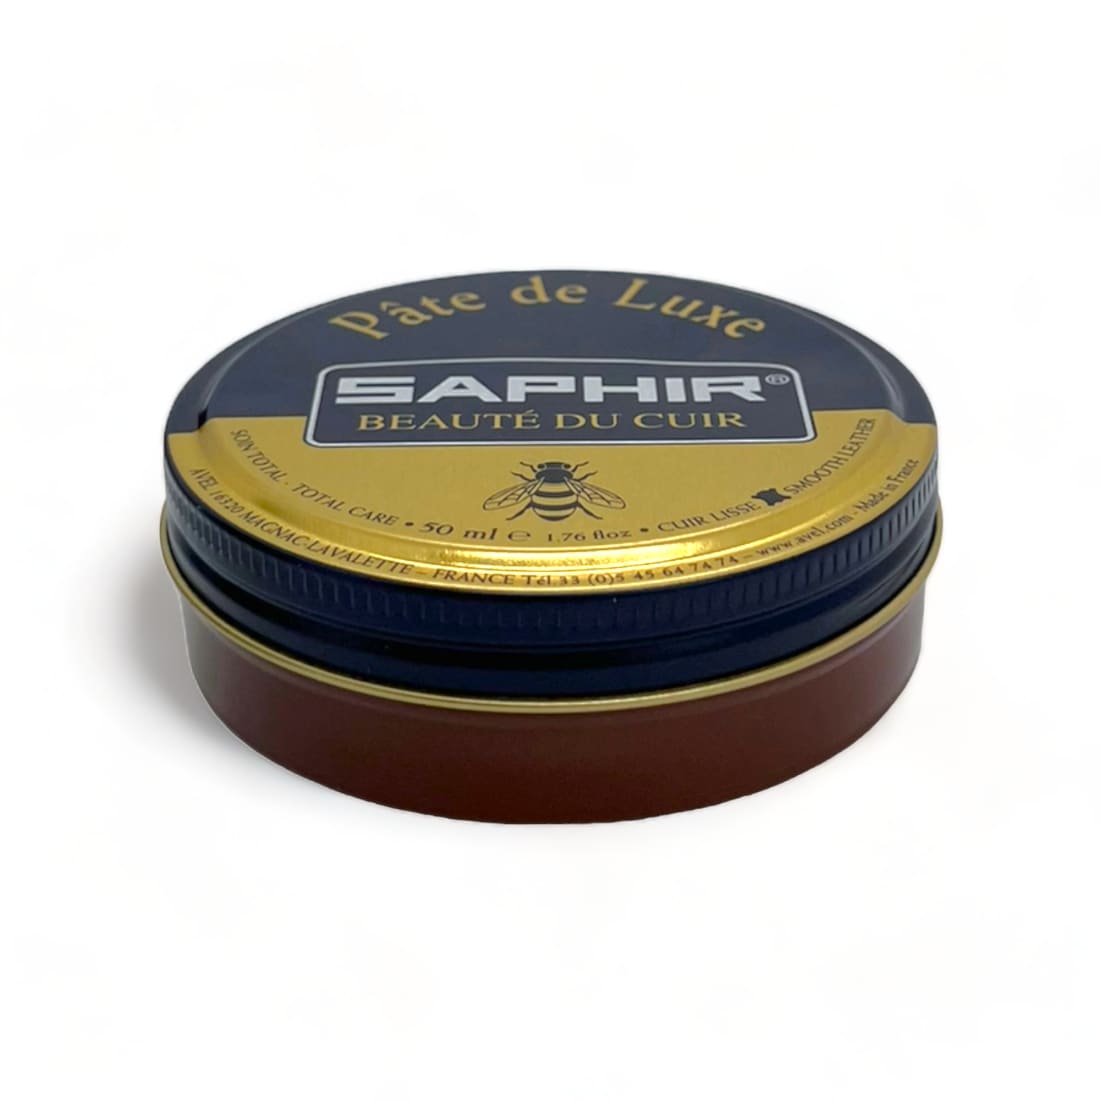 Cirage pâte de luxe Marron Clair - Saphir - 50 ml -